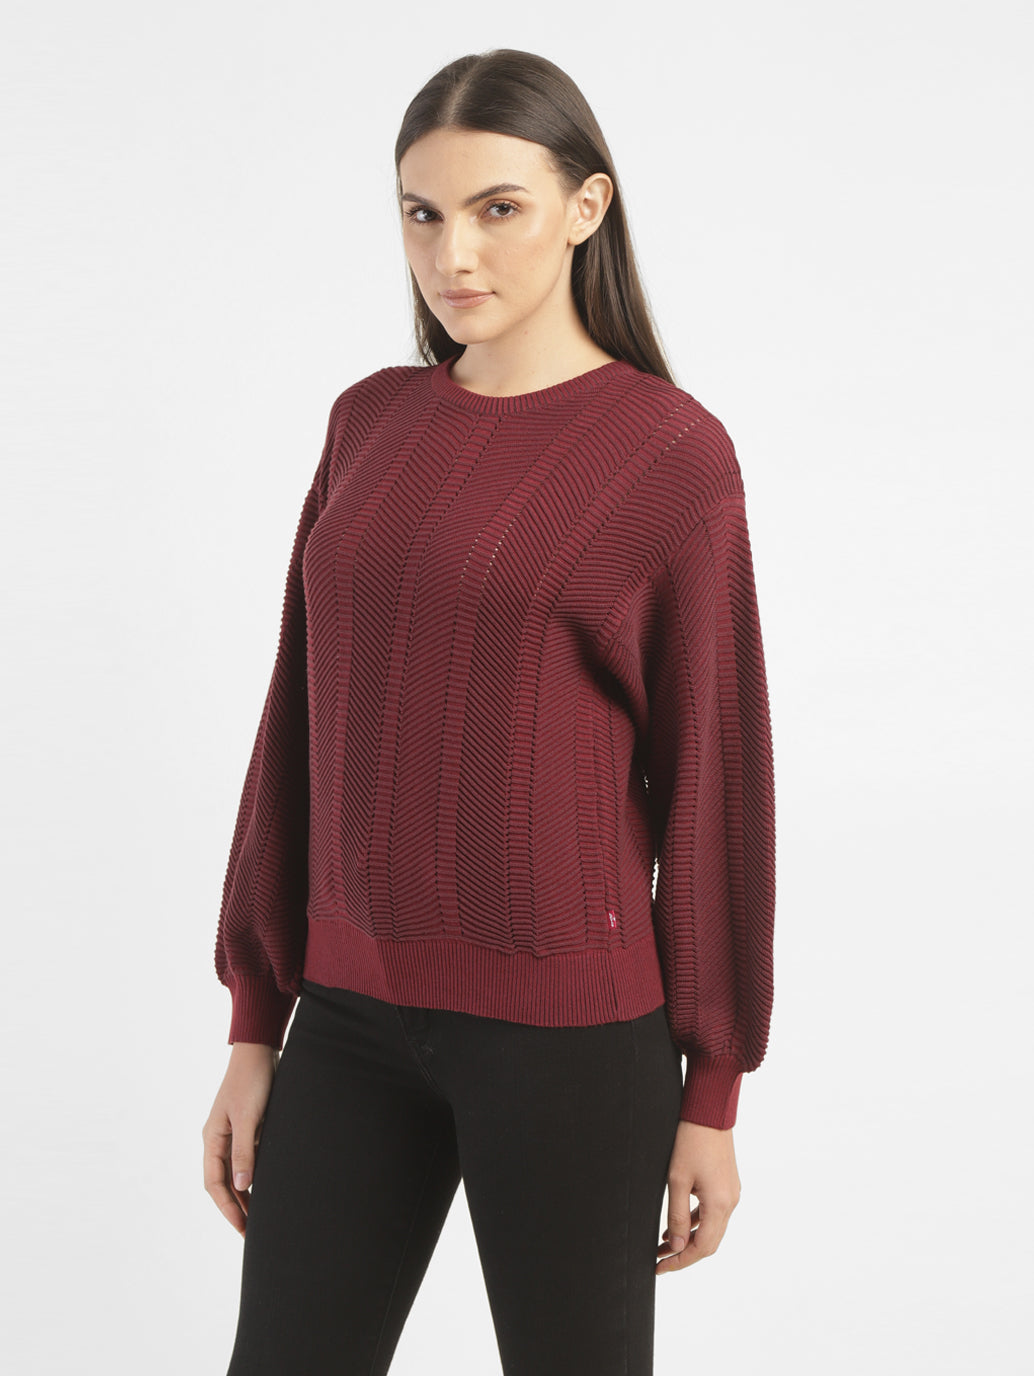 Women's Textured Maroon Crew Neck Sweater